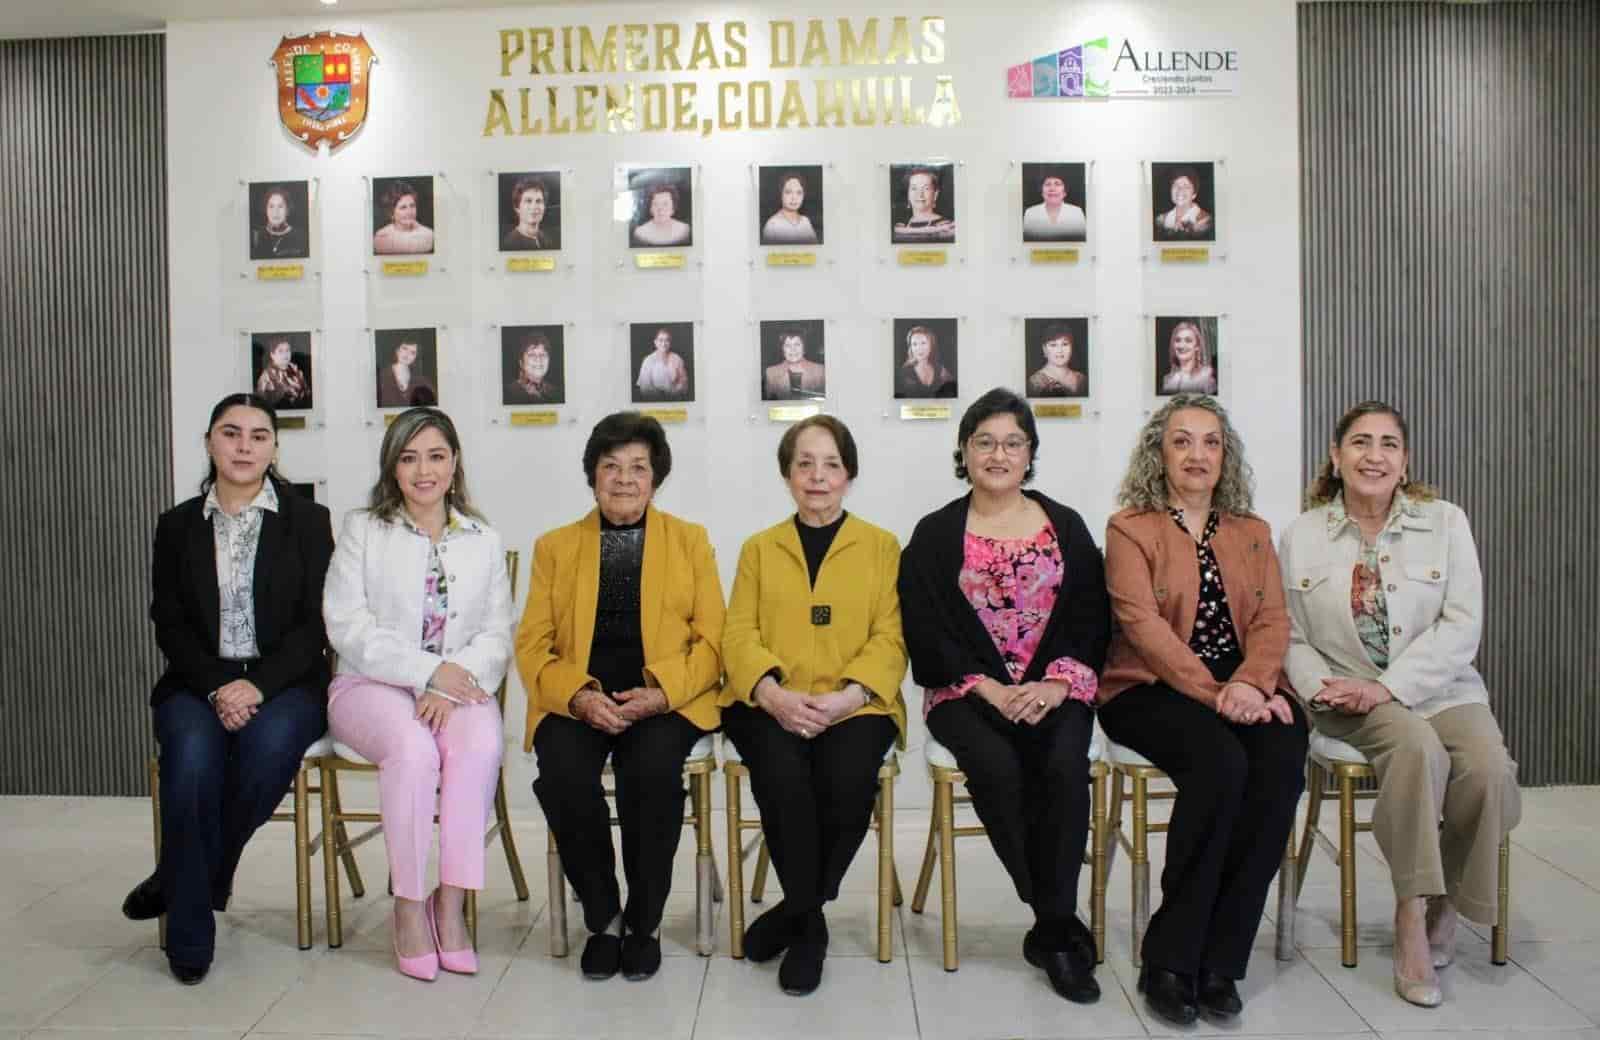 Presentan el muro fotográfico de las primeras damas de Allende